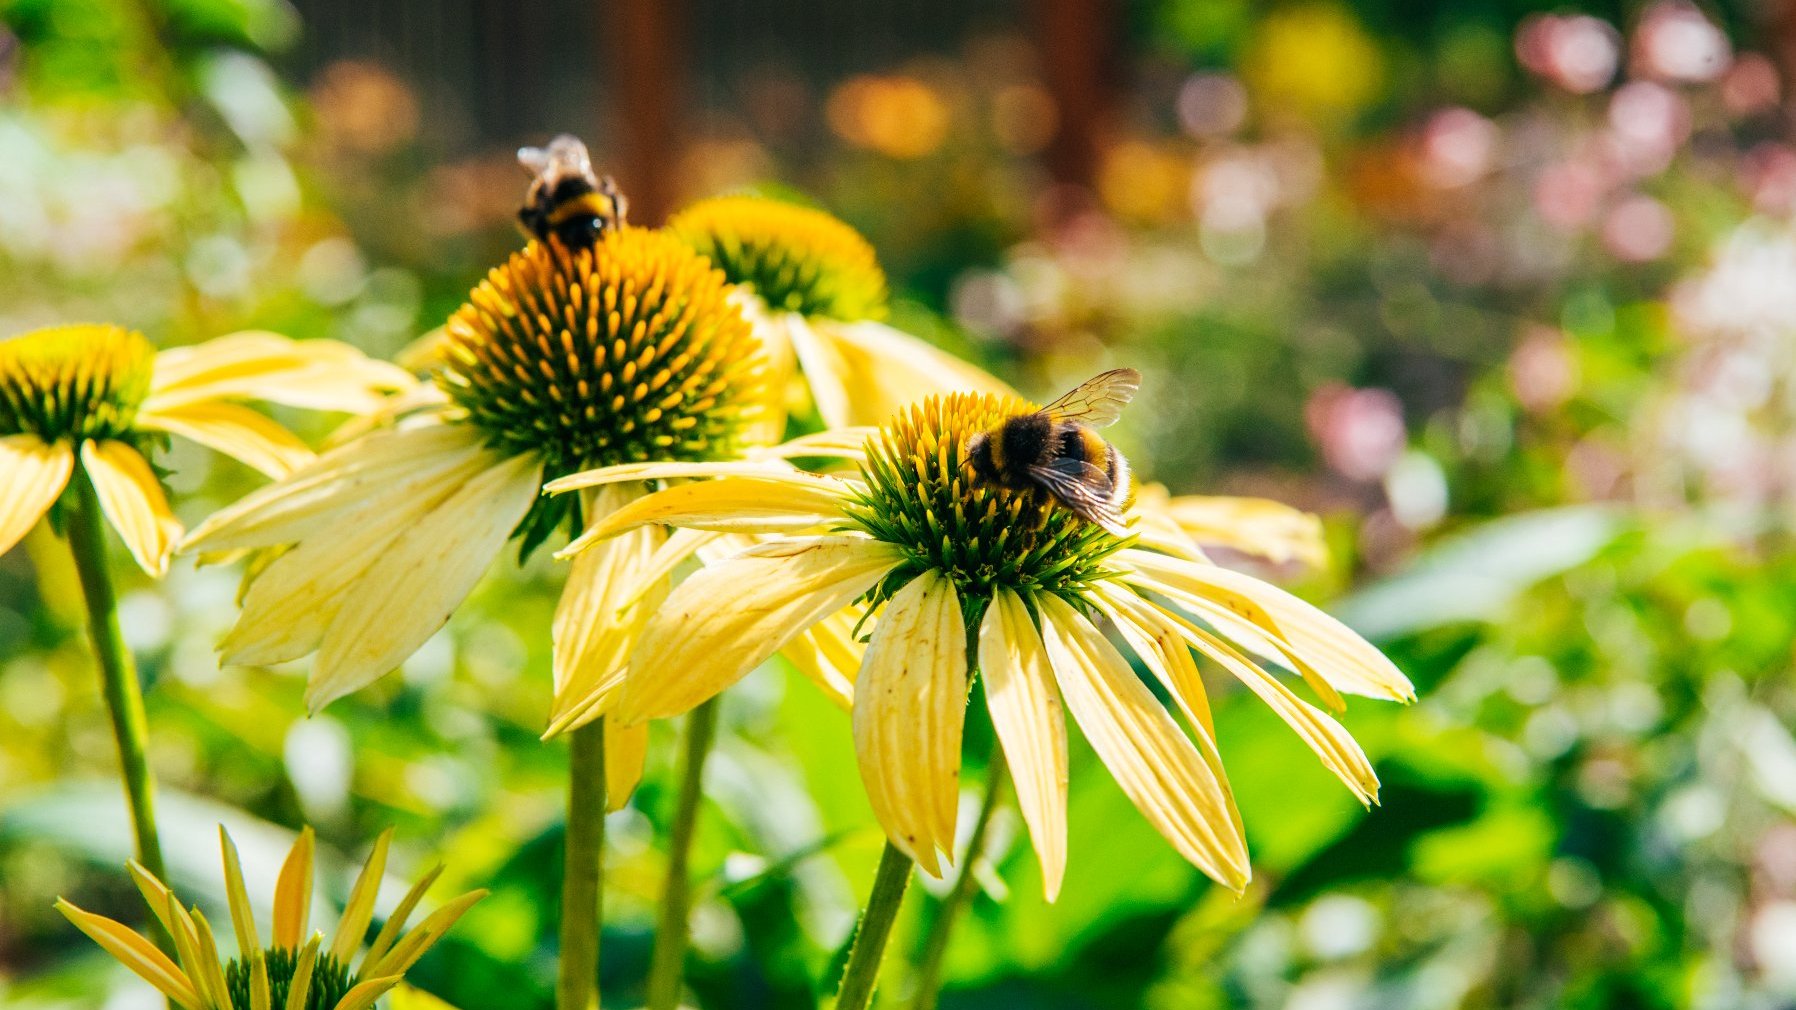 Zdjęcie przedstawia pszczoły na kwiatach.